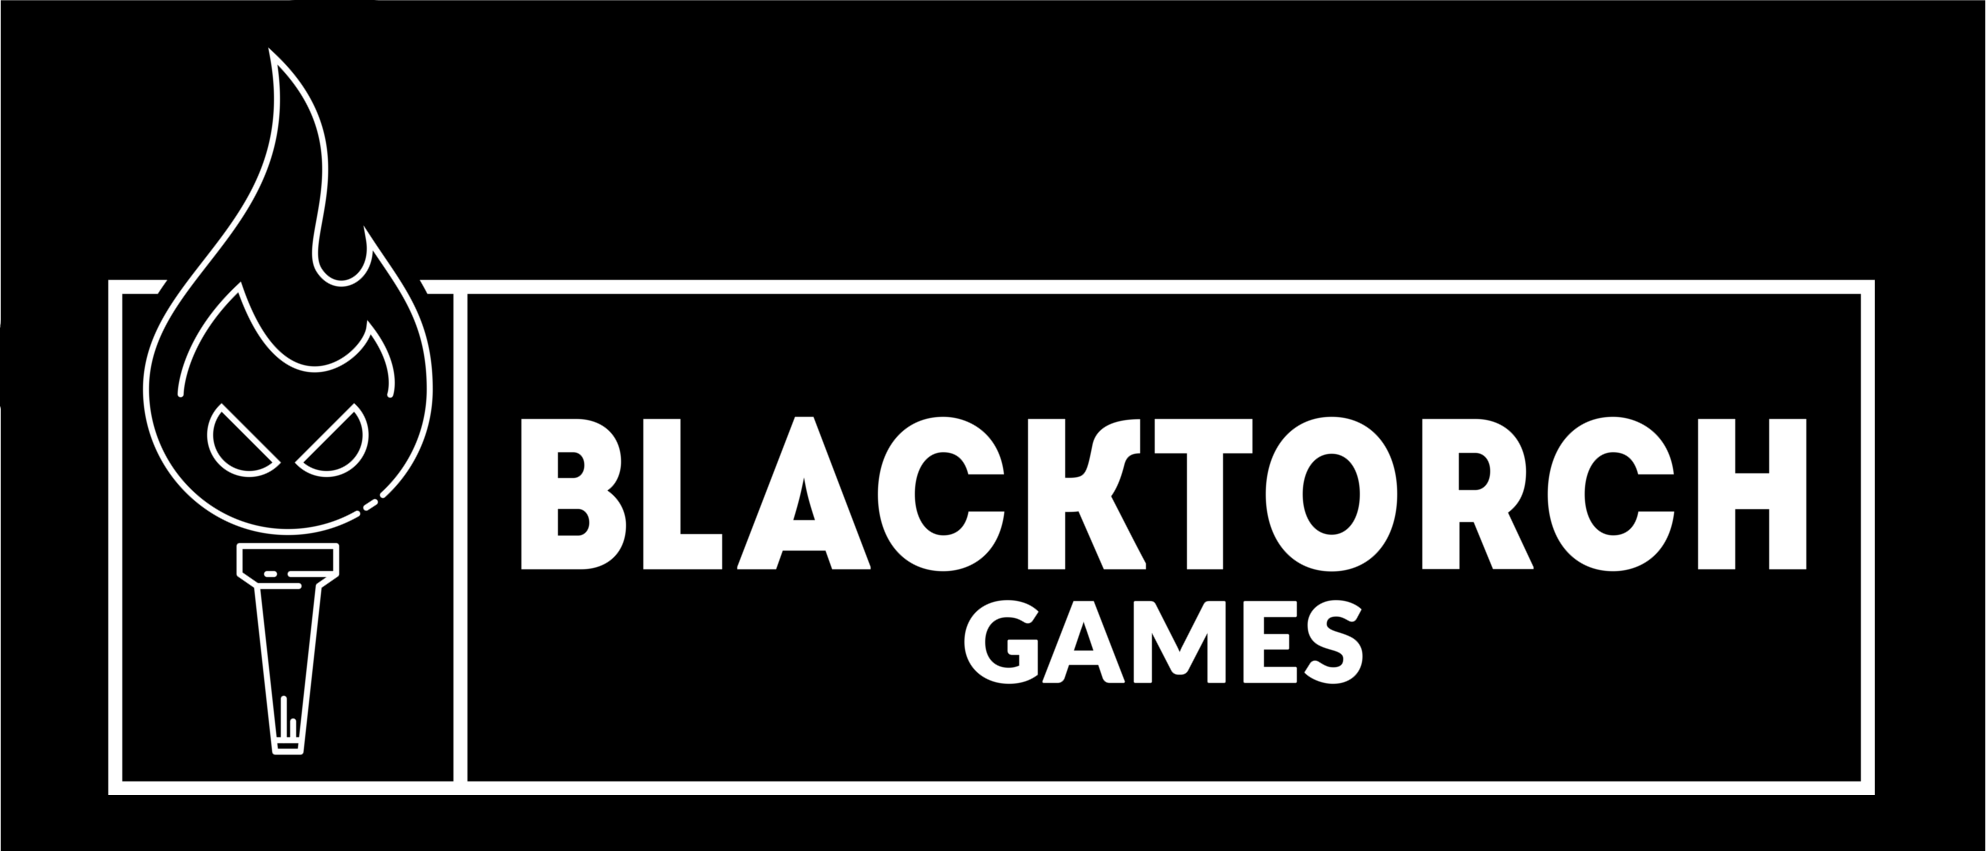 BlackTorchGames_logo_white_black.png